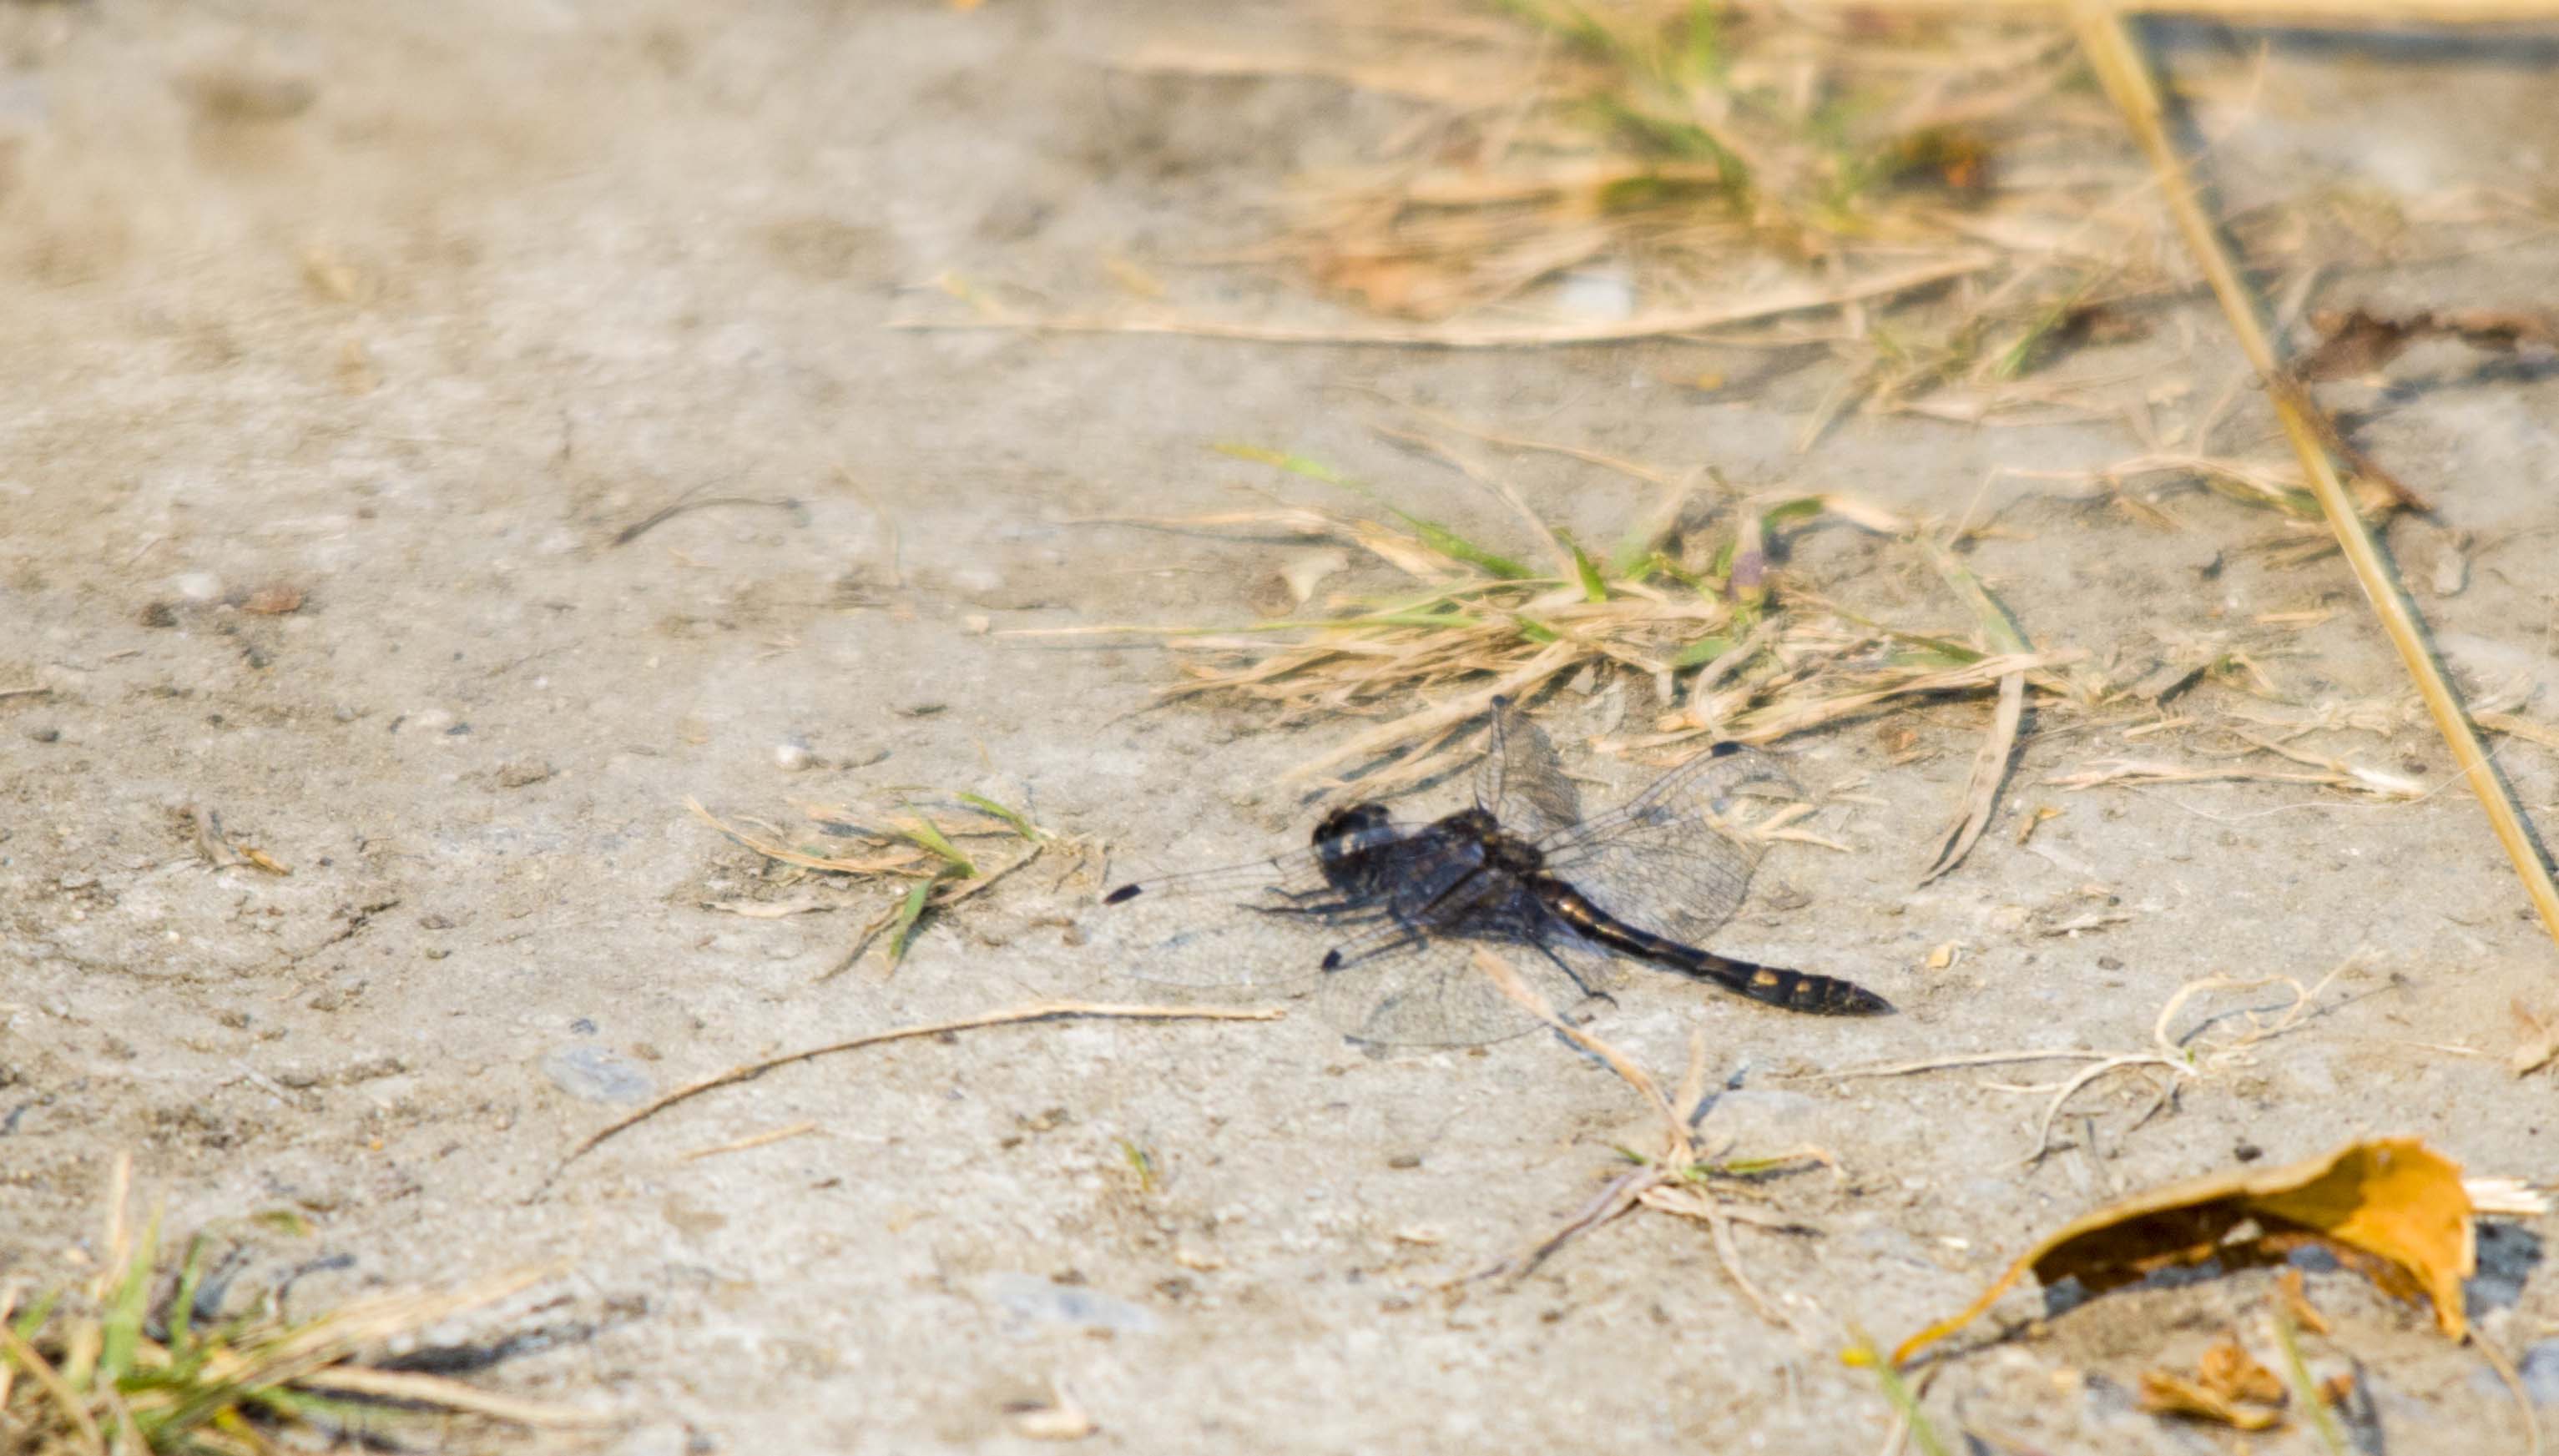 Black Meadowhawk dragonfly